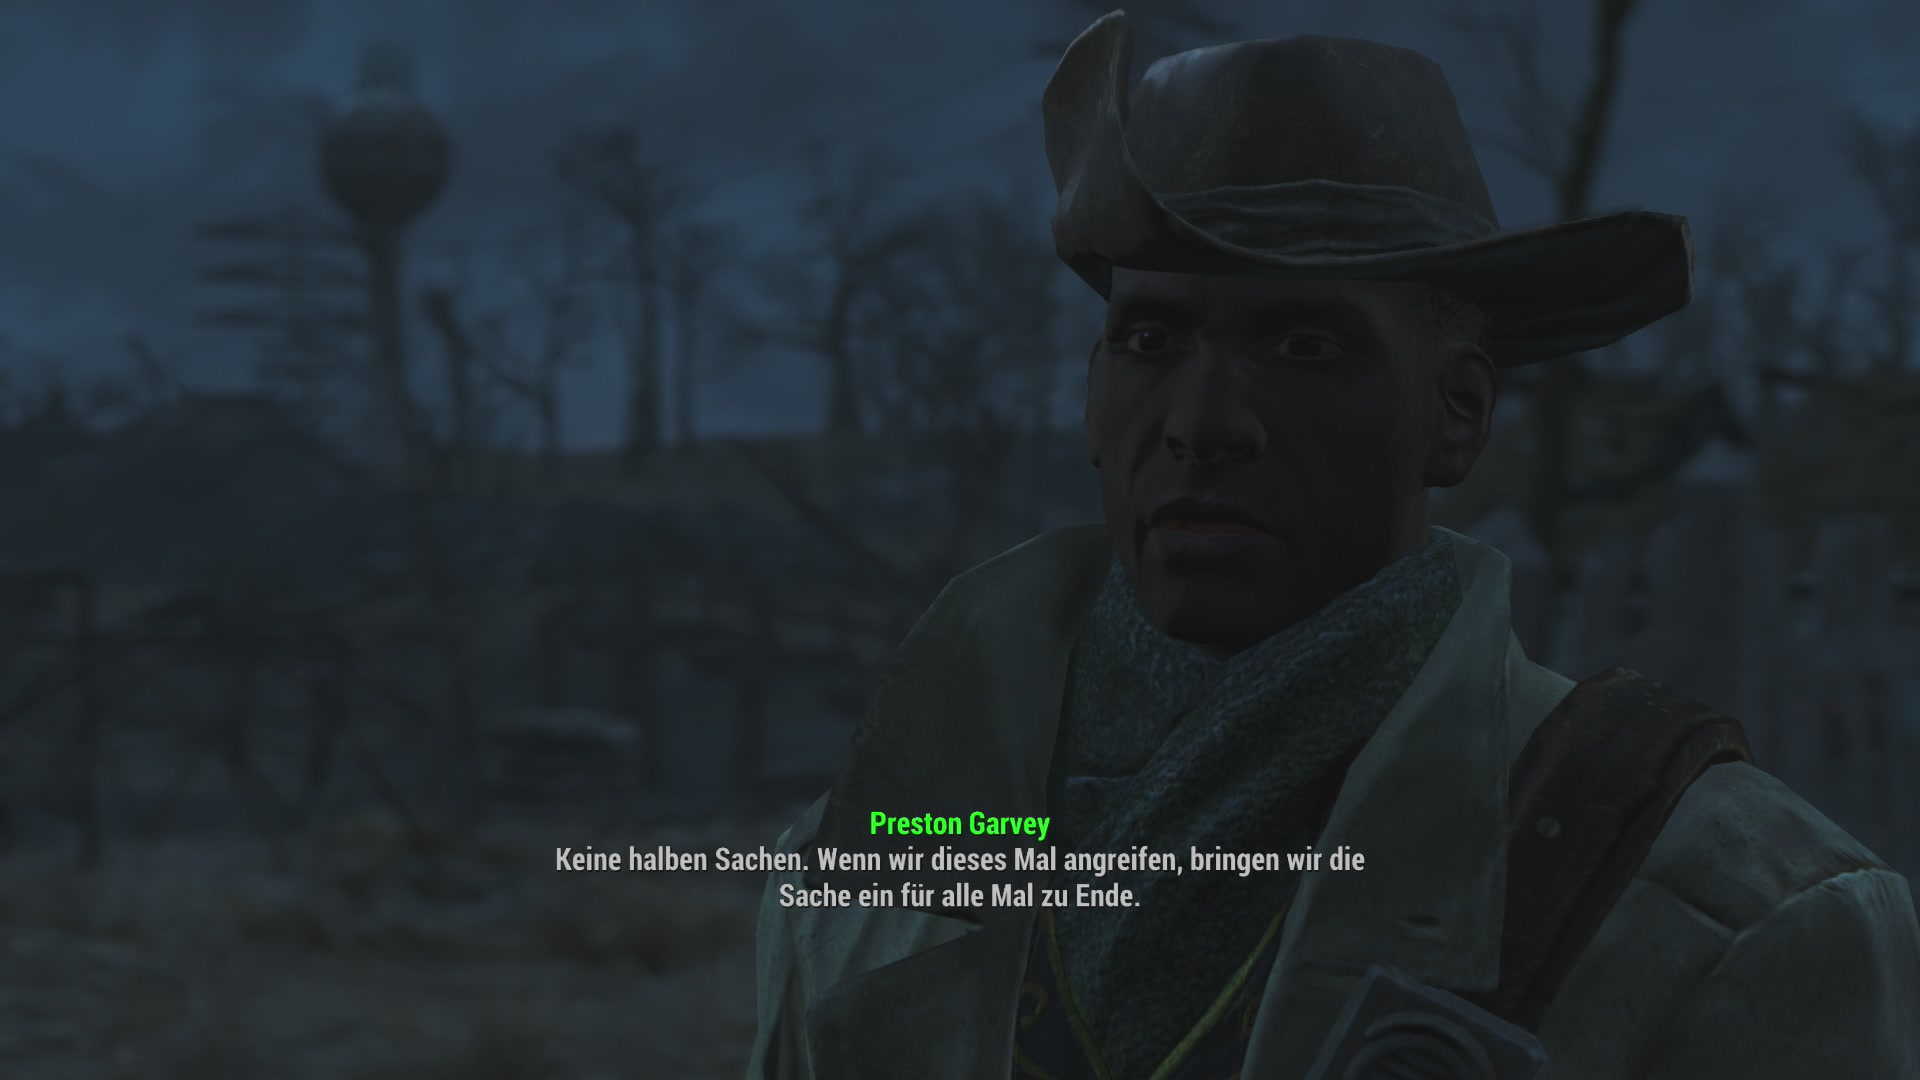 Fallout 4 престон гарви обиделся фото 87